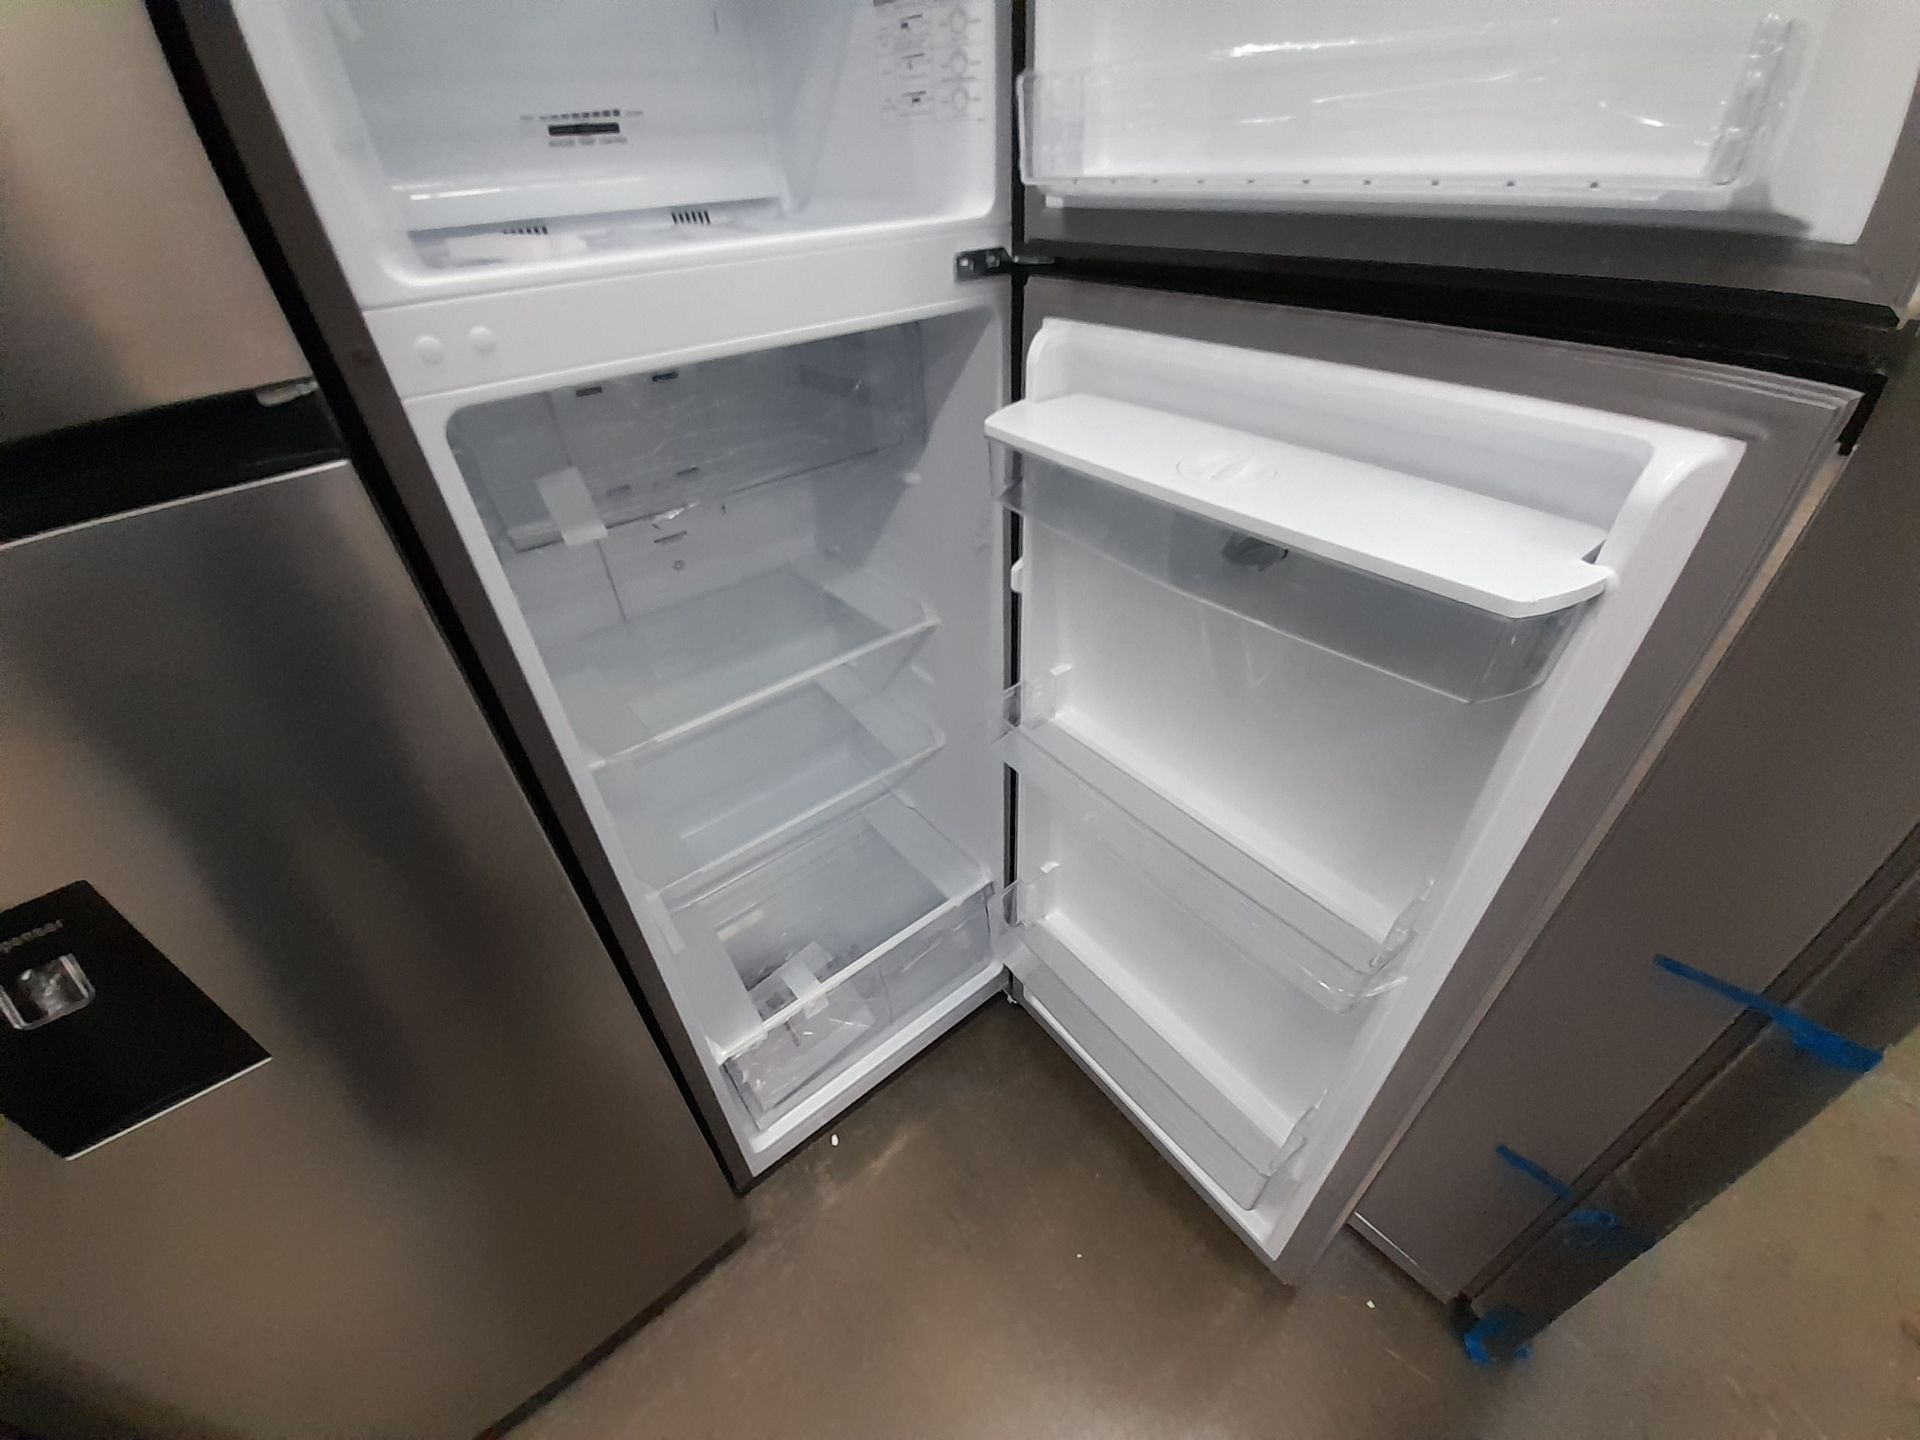 Lote de 2 refrigeradores contiene: 1 refrigerador con dispensador de agua Marca HISENSE, Modelo - Image 5 of 8